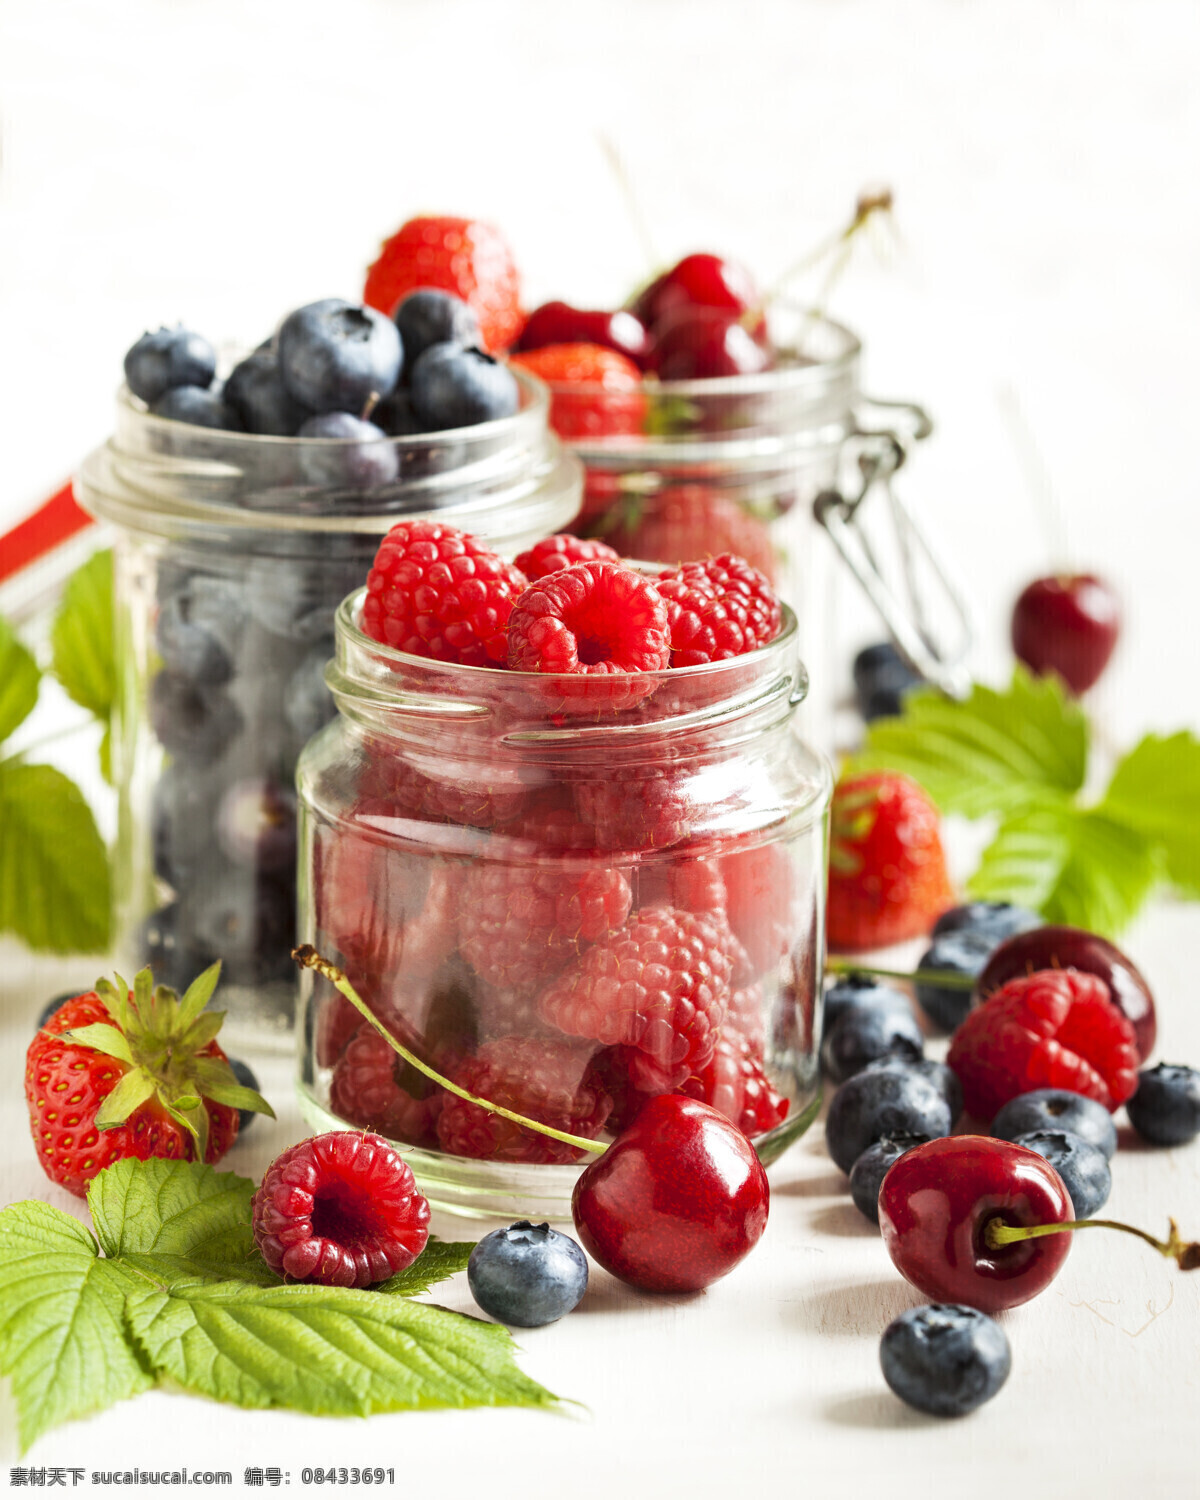 新鲜 浆果 玻璃 罐头 新鲜浆果 树莓 蓝莓 草莓 新鲜水果 果实 美食 美味 食物摄影 美食图片 餐饮美食